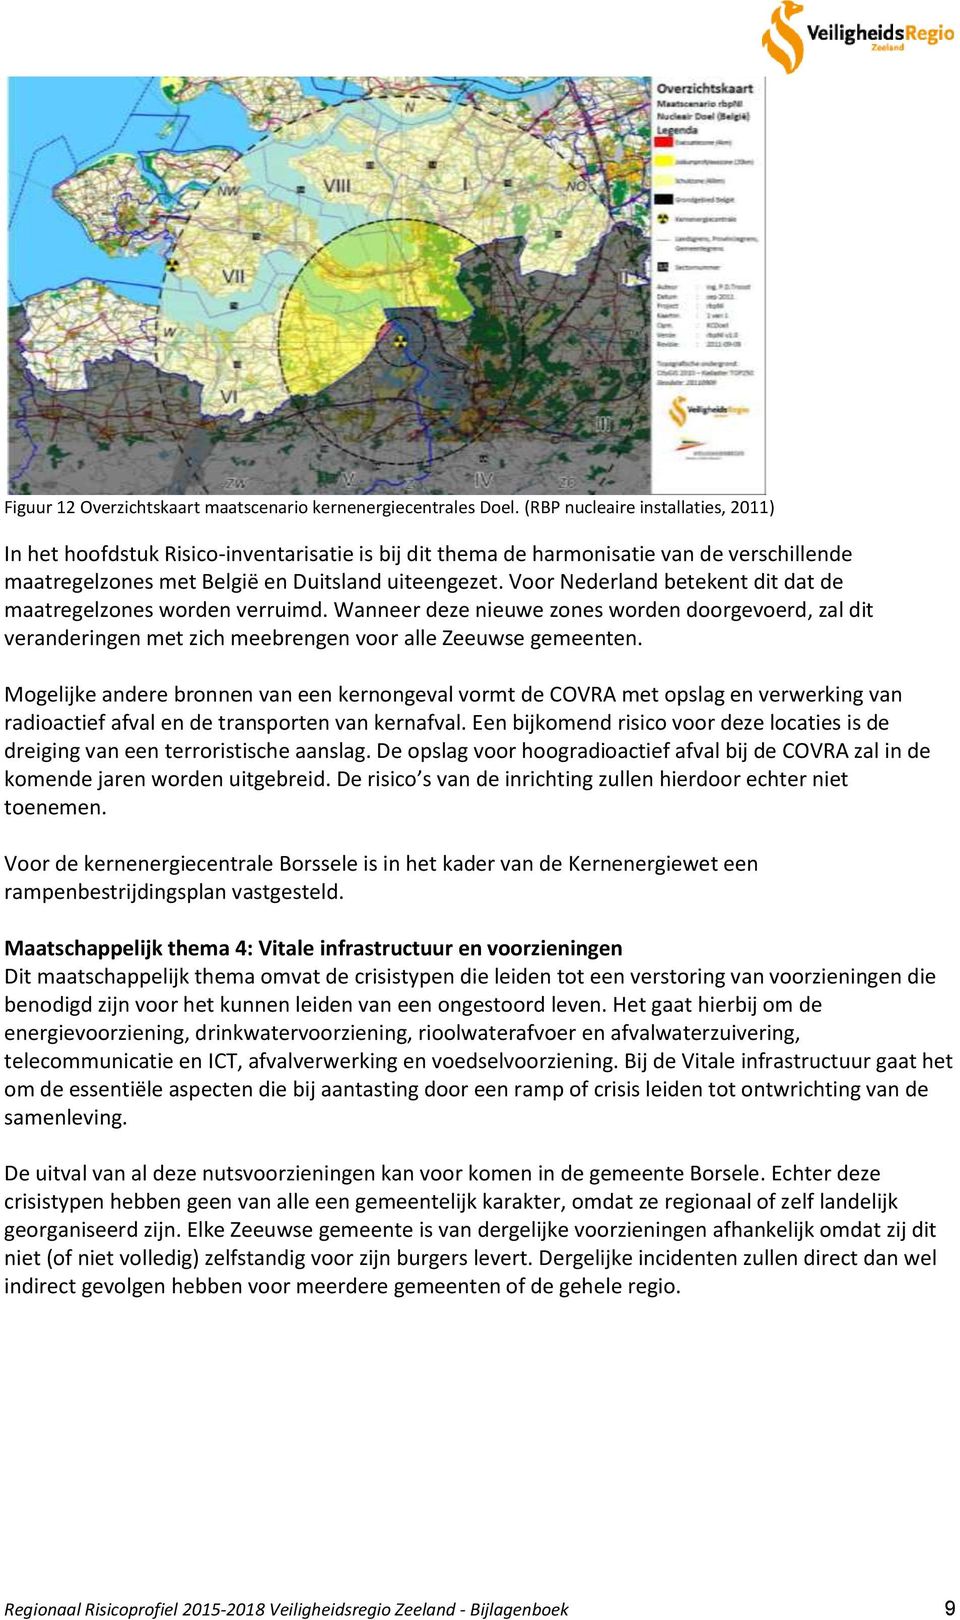 Voor Nederland betekent dit dat de maatregelzones worden verruimd. Wanneer deze nieuwe zones worden doorgevoerd, zal dit veranderingen met zich meebrengen voor alle Zeeuwse gemeenten.